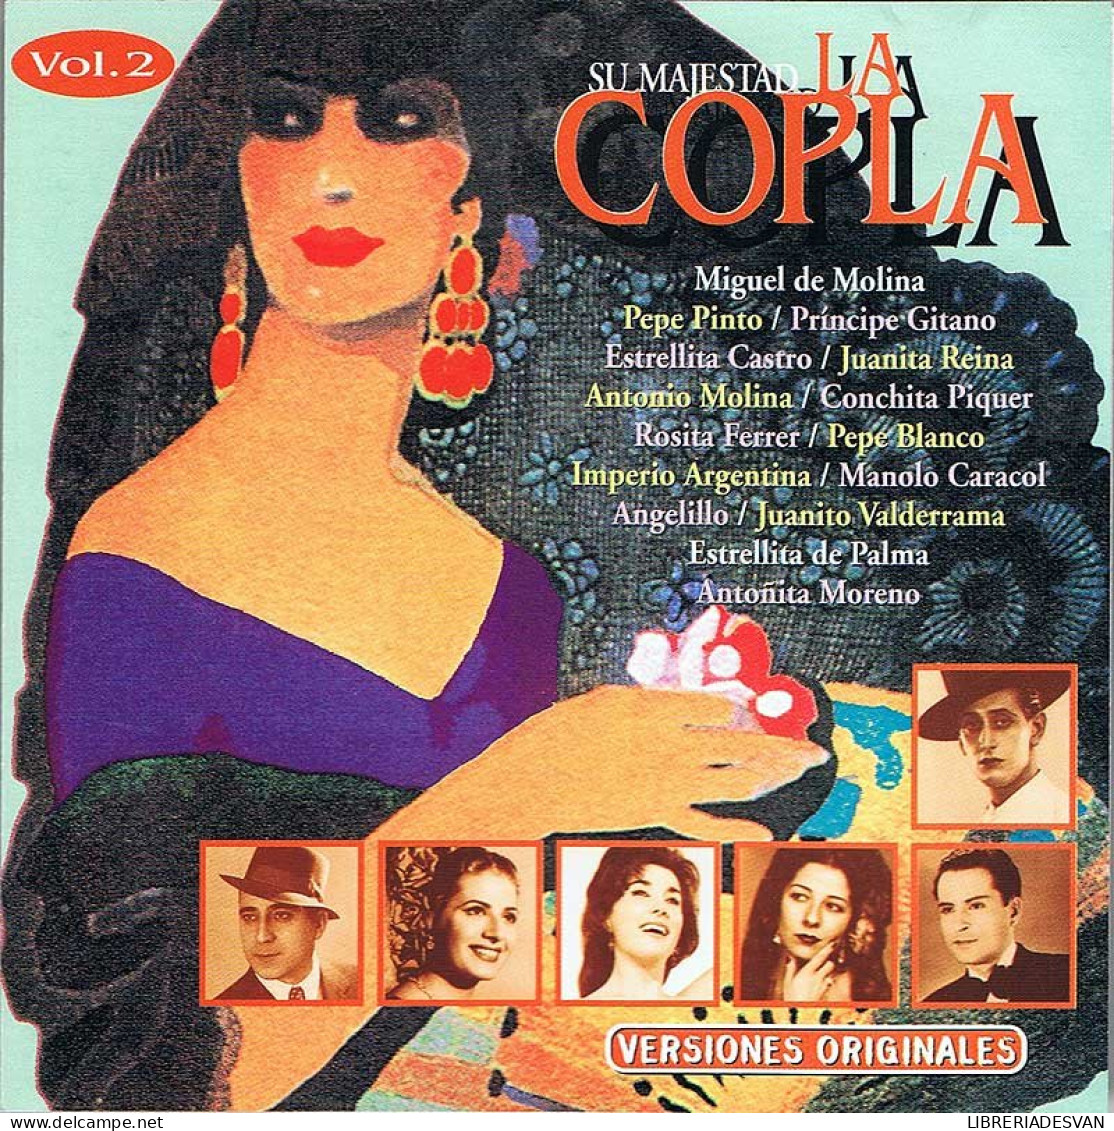 Su Majestad La Copla Vol. 2. CD - Other - Spanish Music